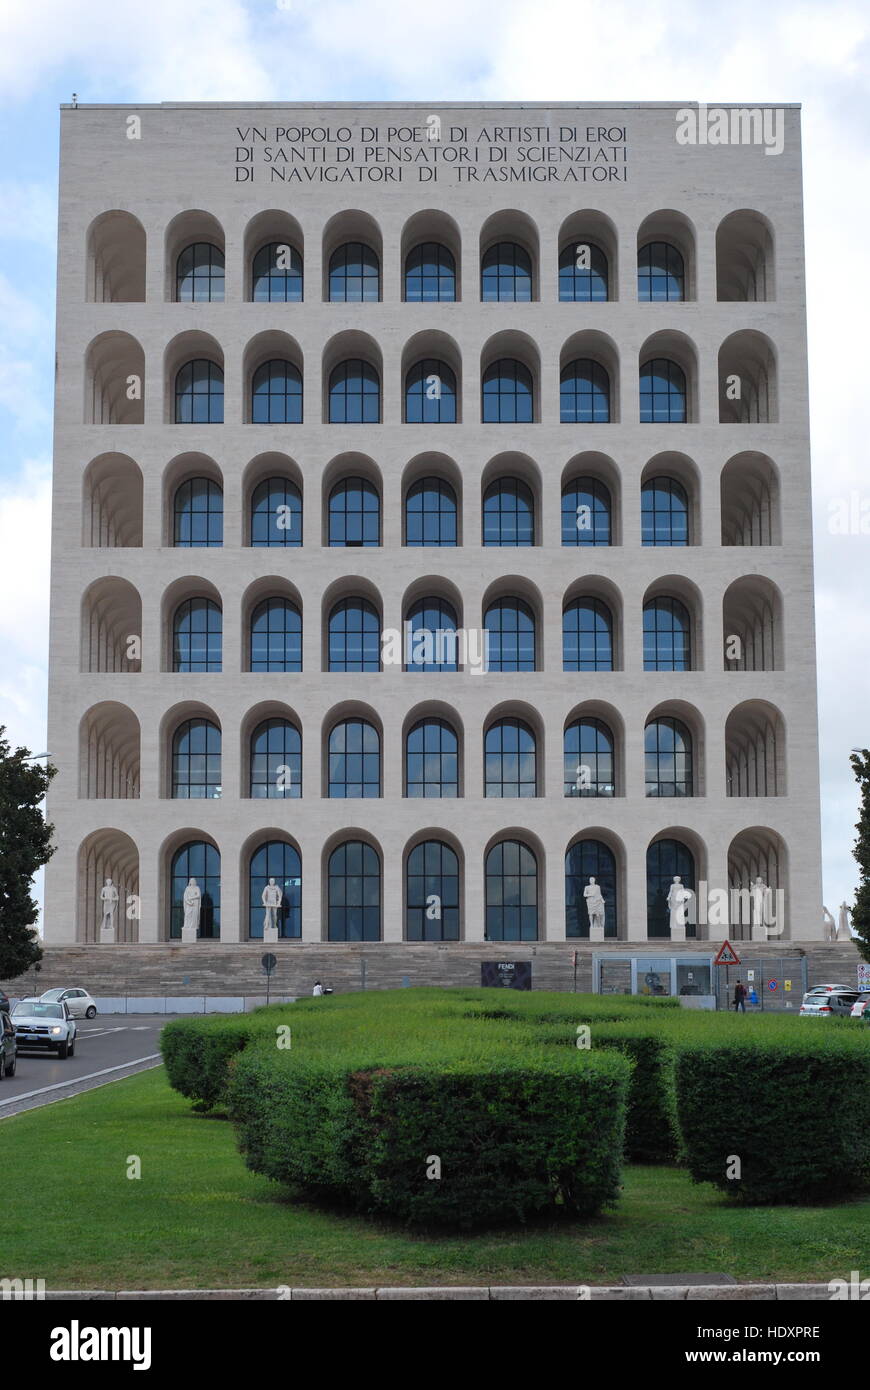 Palazzo della Civilta Italiana (Colosseo Quadrato), EUR, Rome, Italy Stock  Photo - Alamy